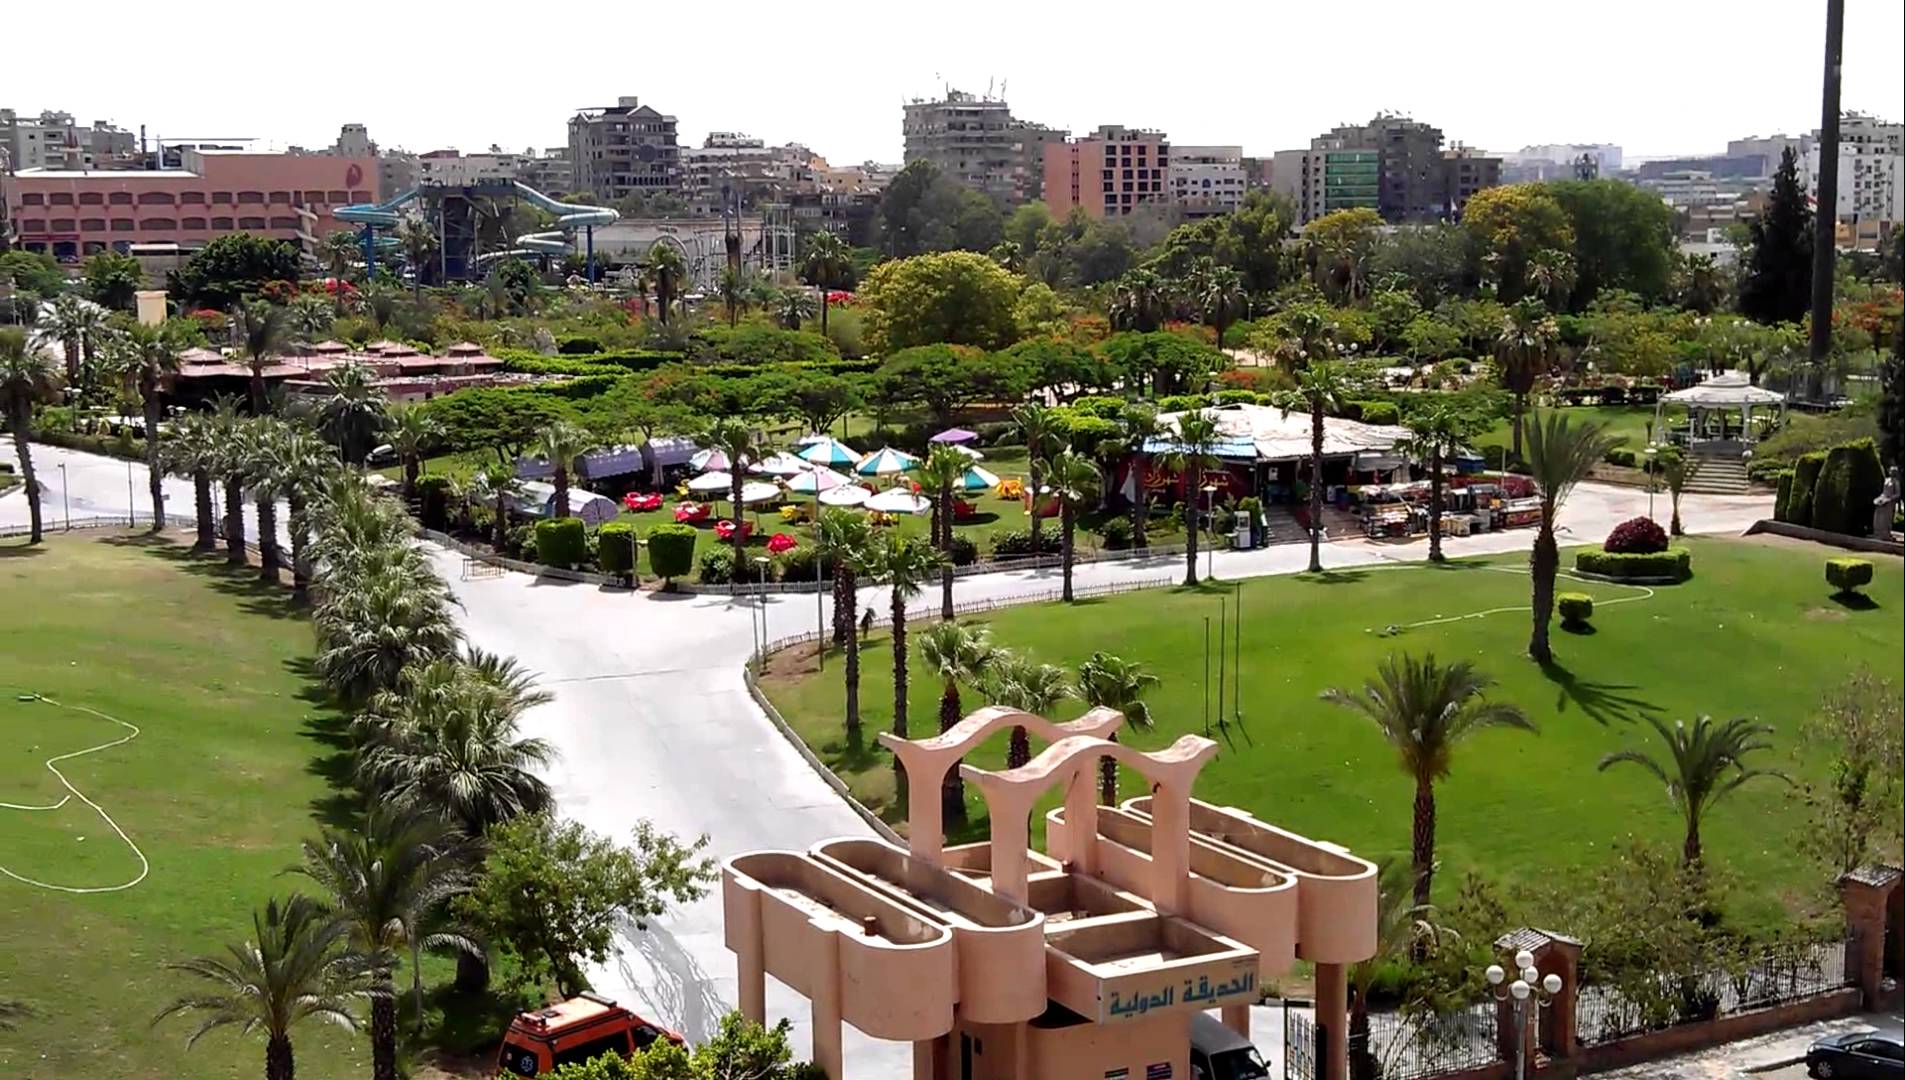 افضل الاماكن السياحية في القاهرة 